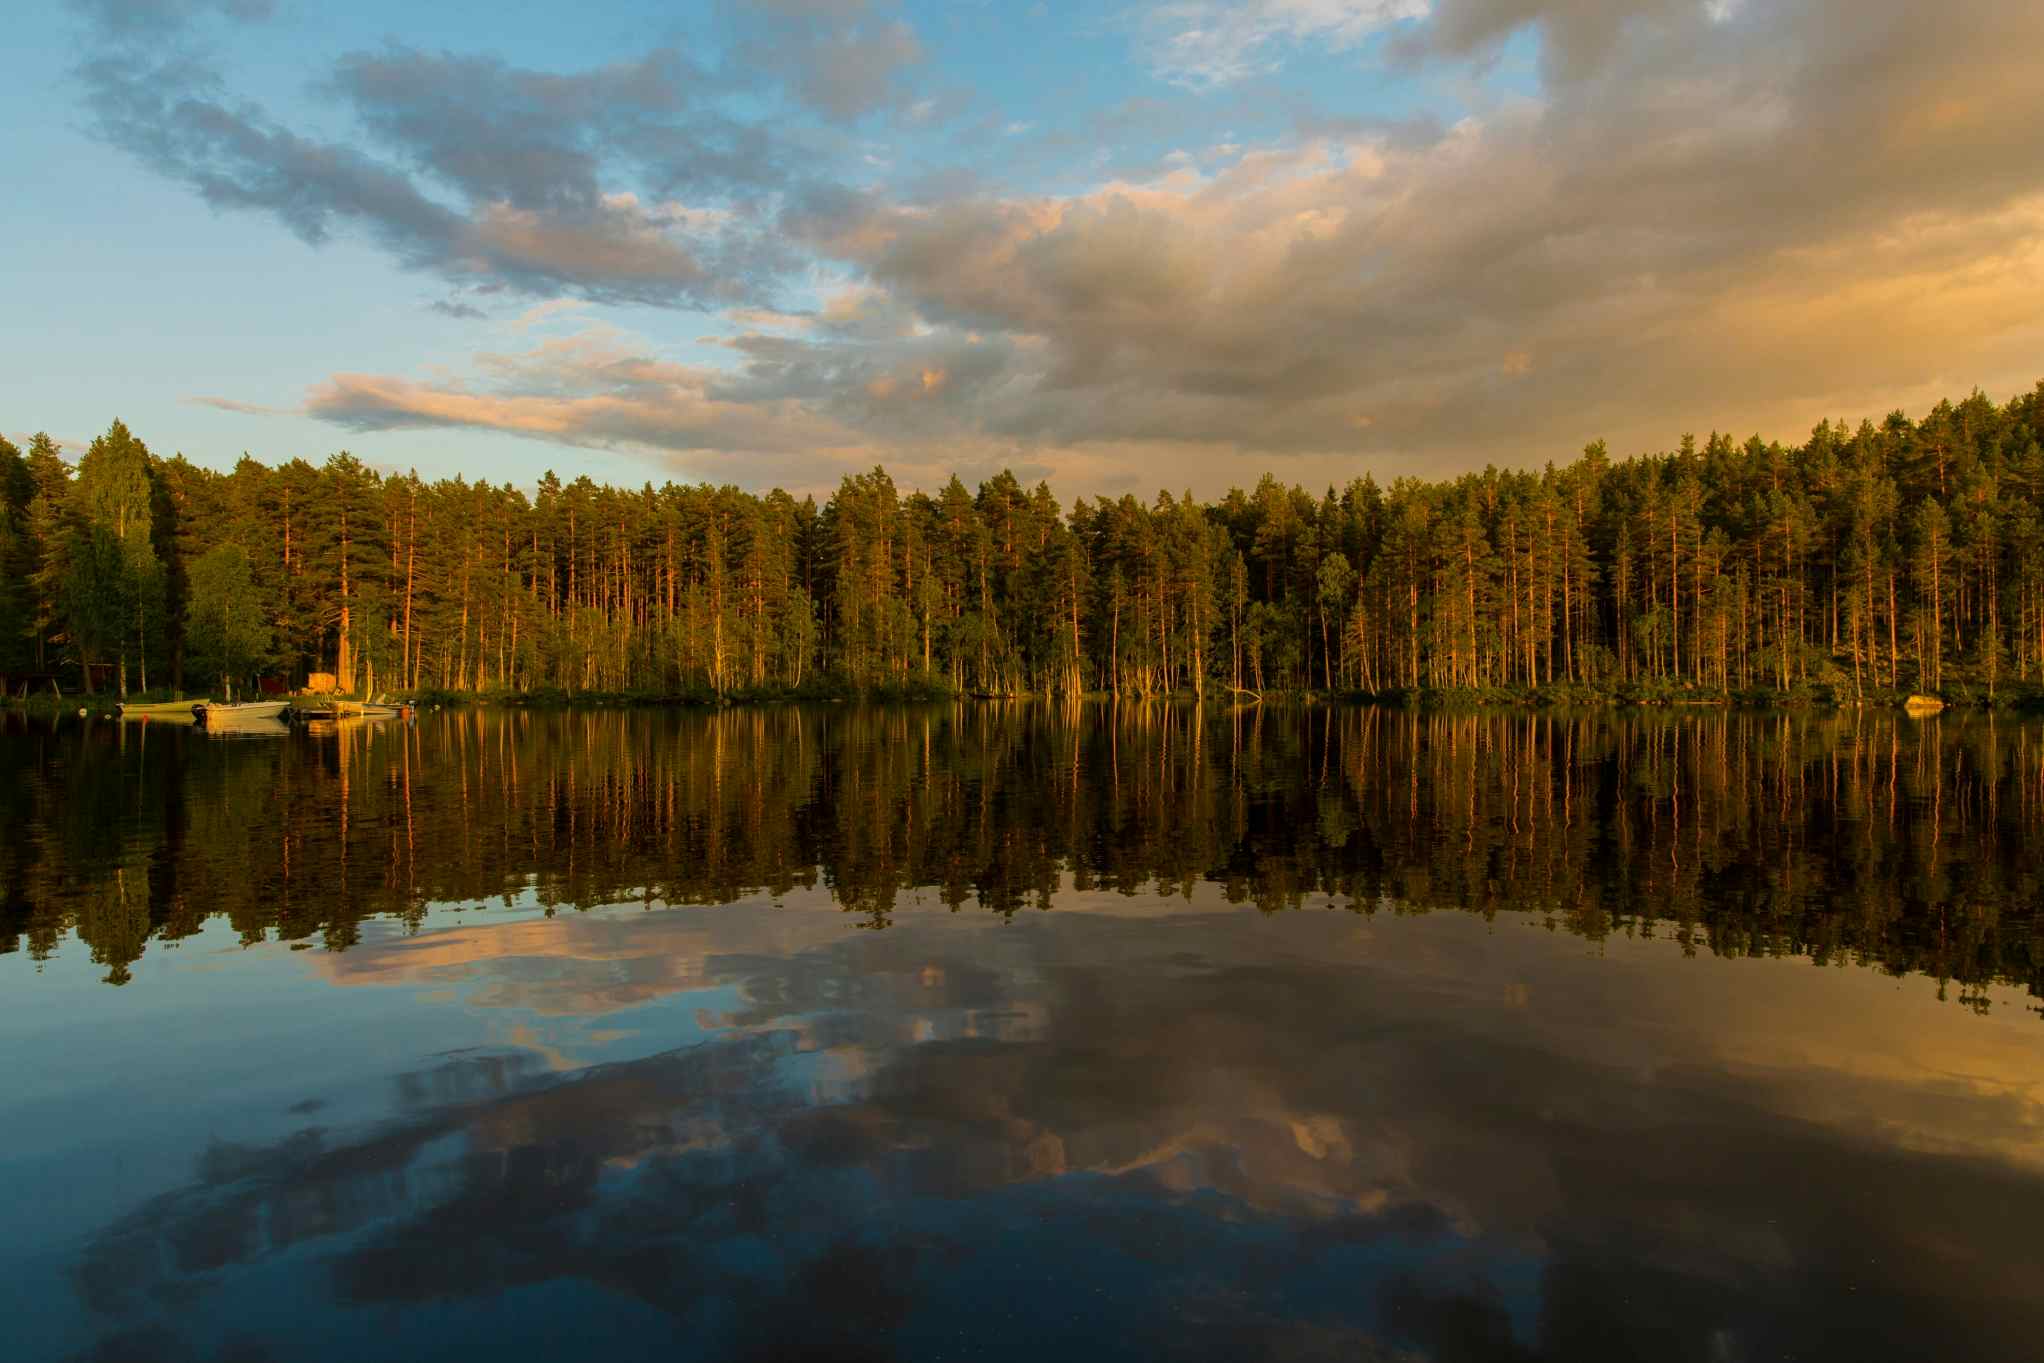 Sunrise over the lake, Sweden. Photo: Marcus Westberg